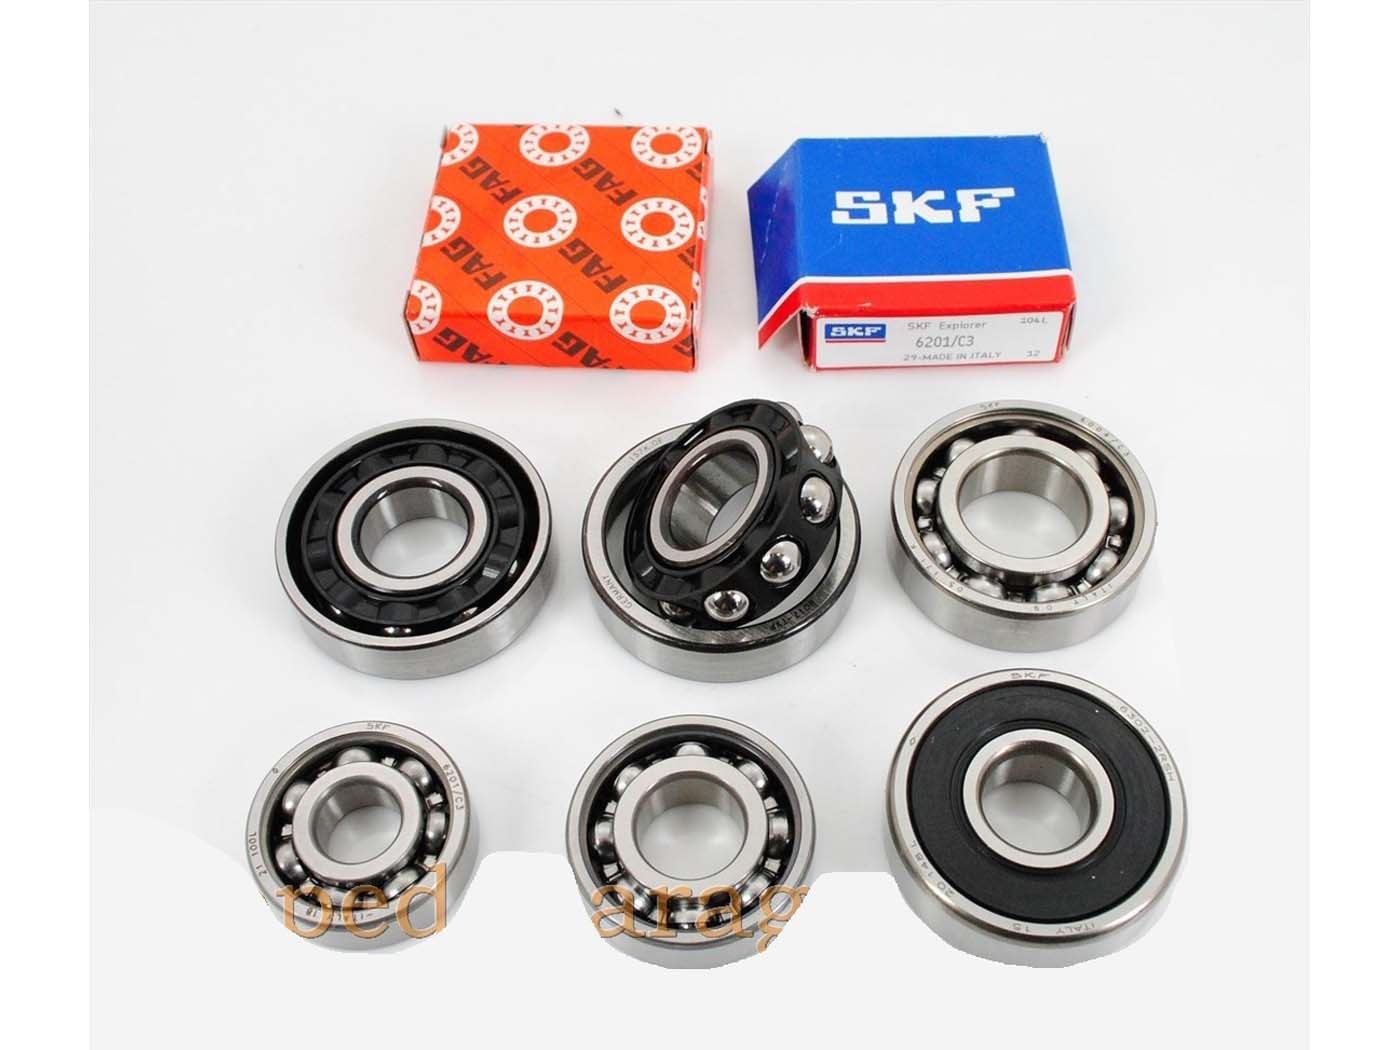 Bearing Set SKF For Kreidler Florett K 54, RS, RMC, LF, LH, TM, Super 4, Egg Tank